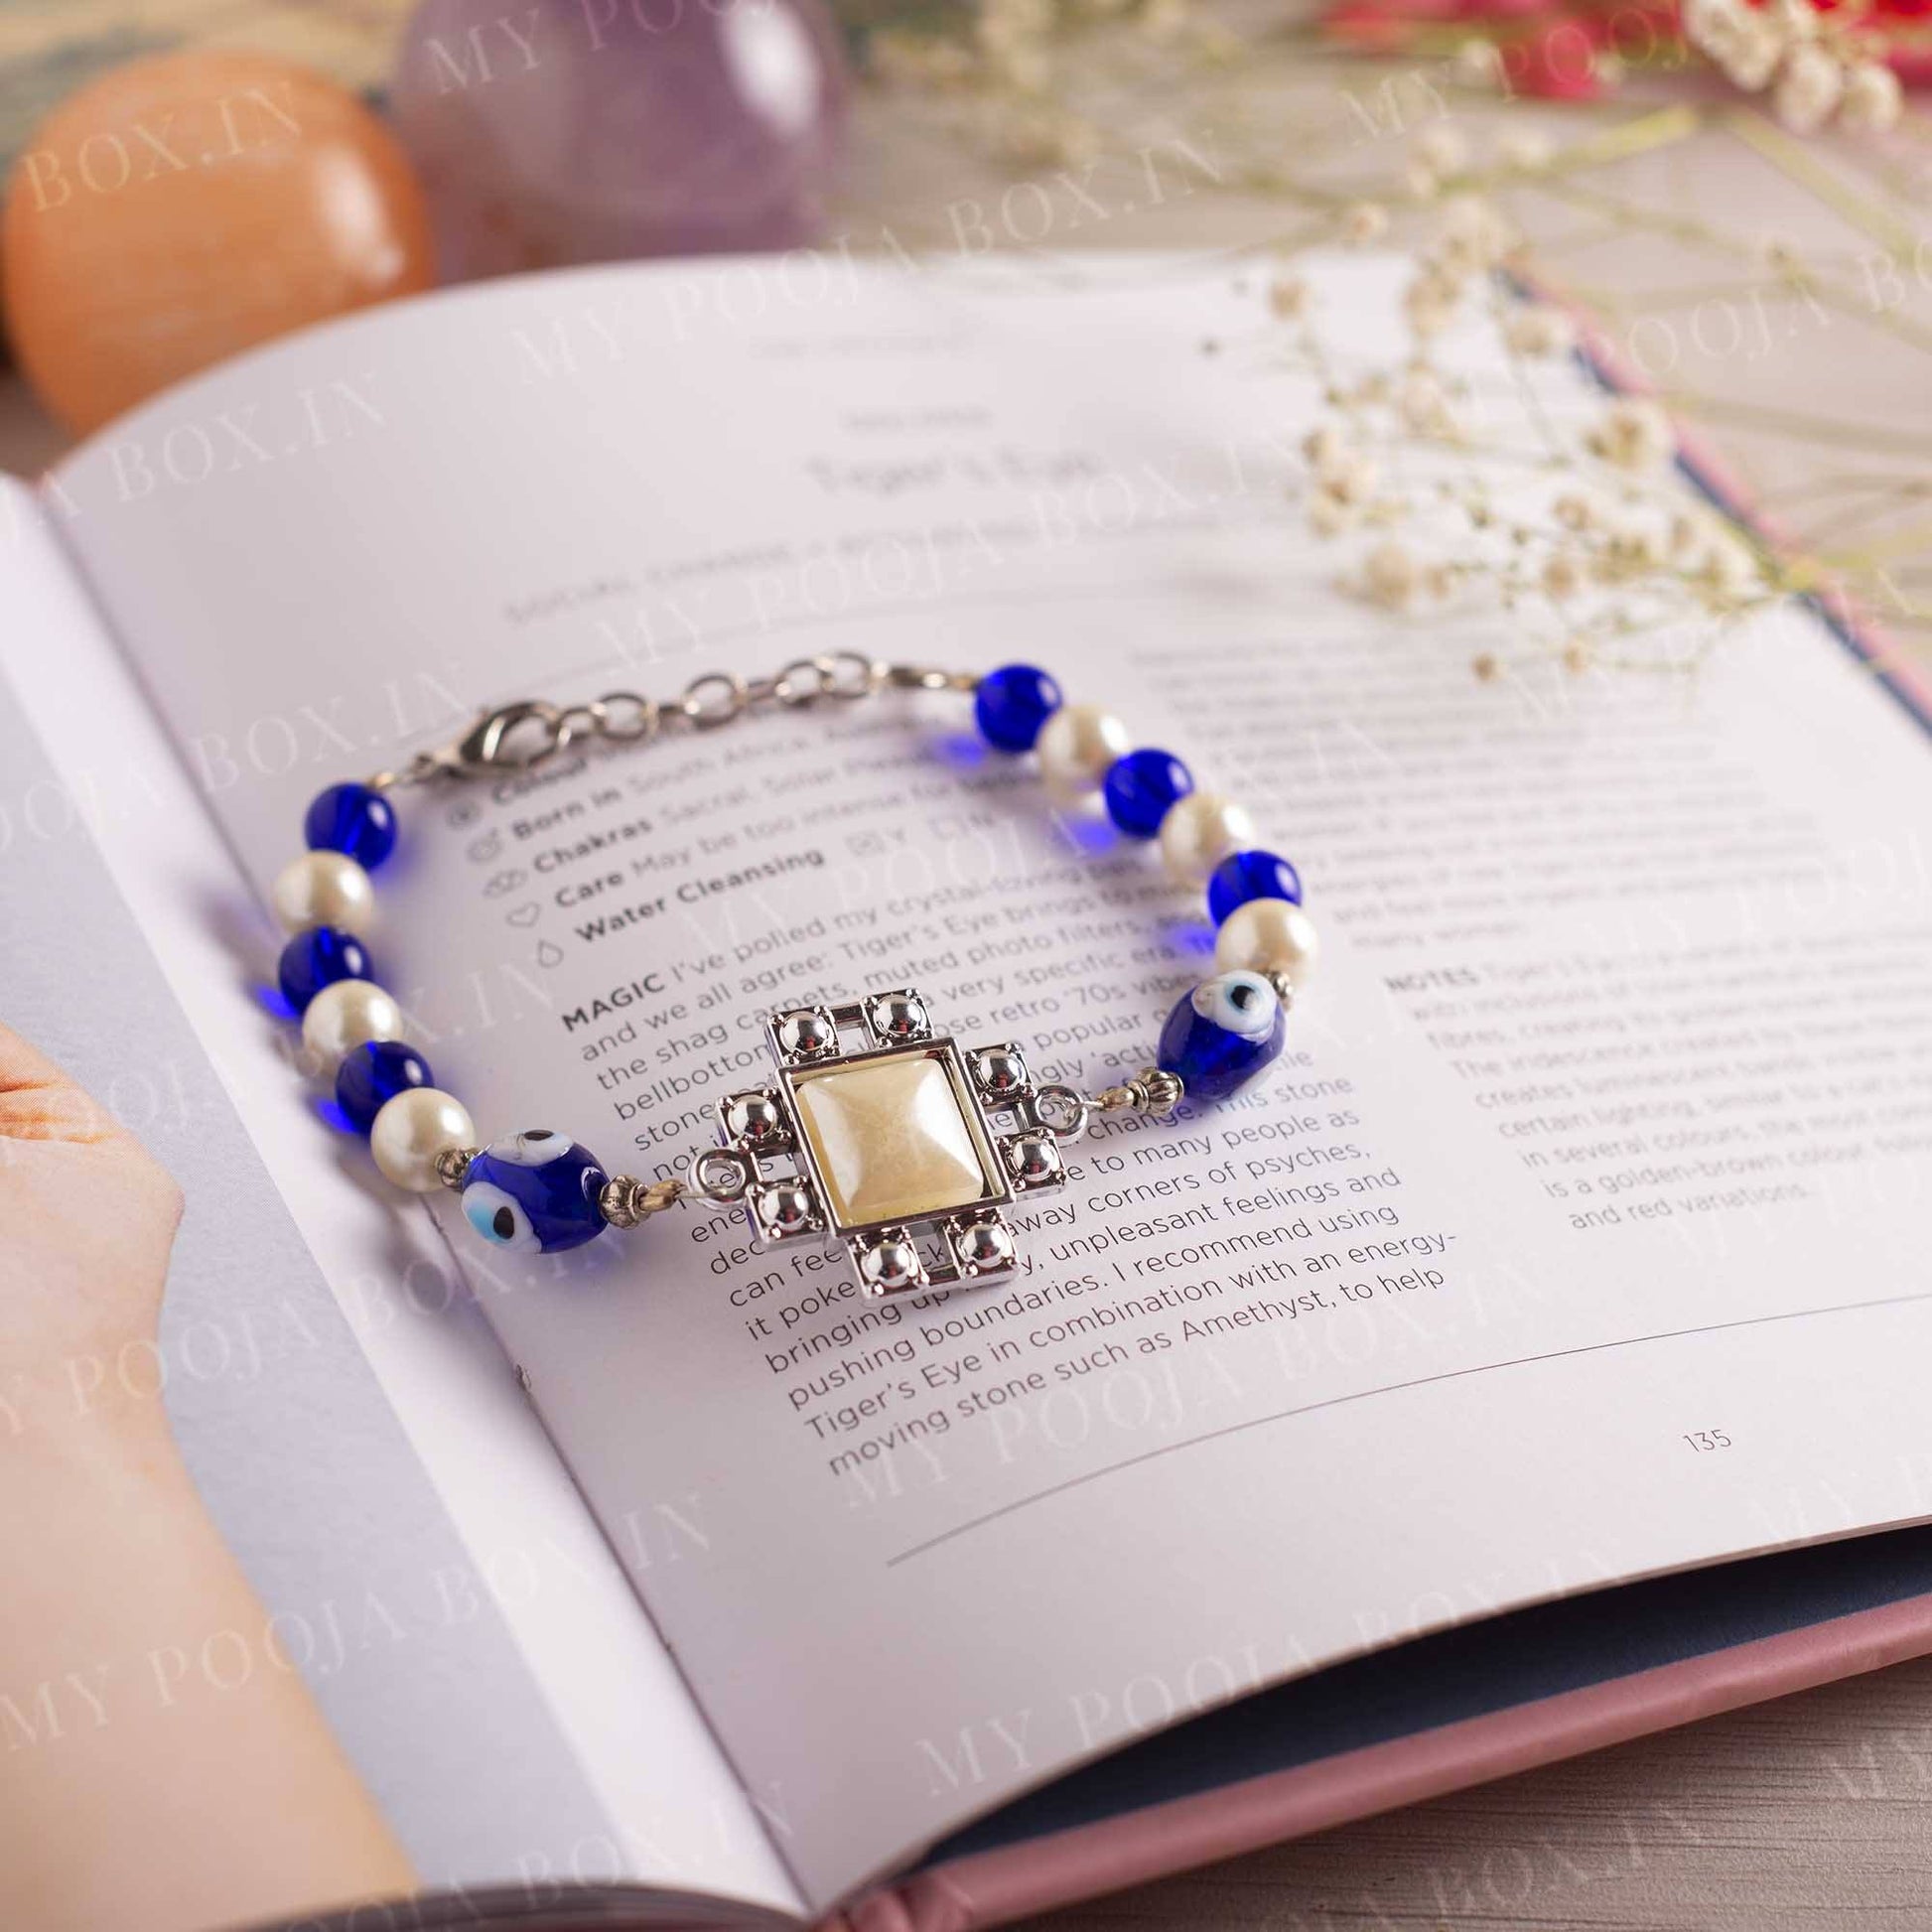 Buy Designer Stone Bracelet - Whispering Meadows Hamnsa Evil Eye Bracelet